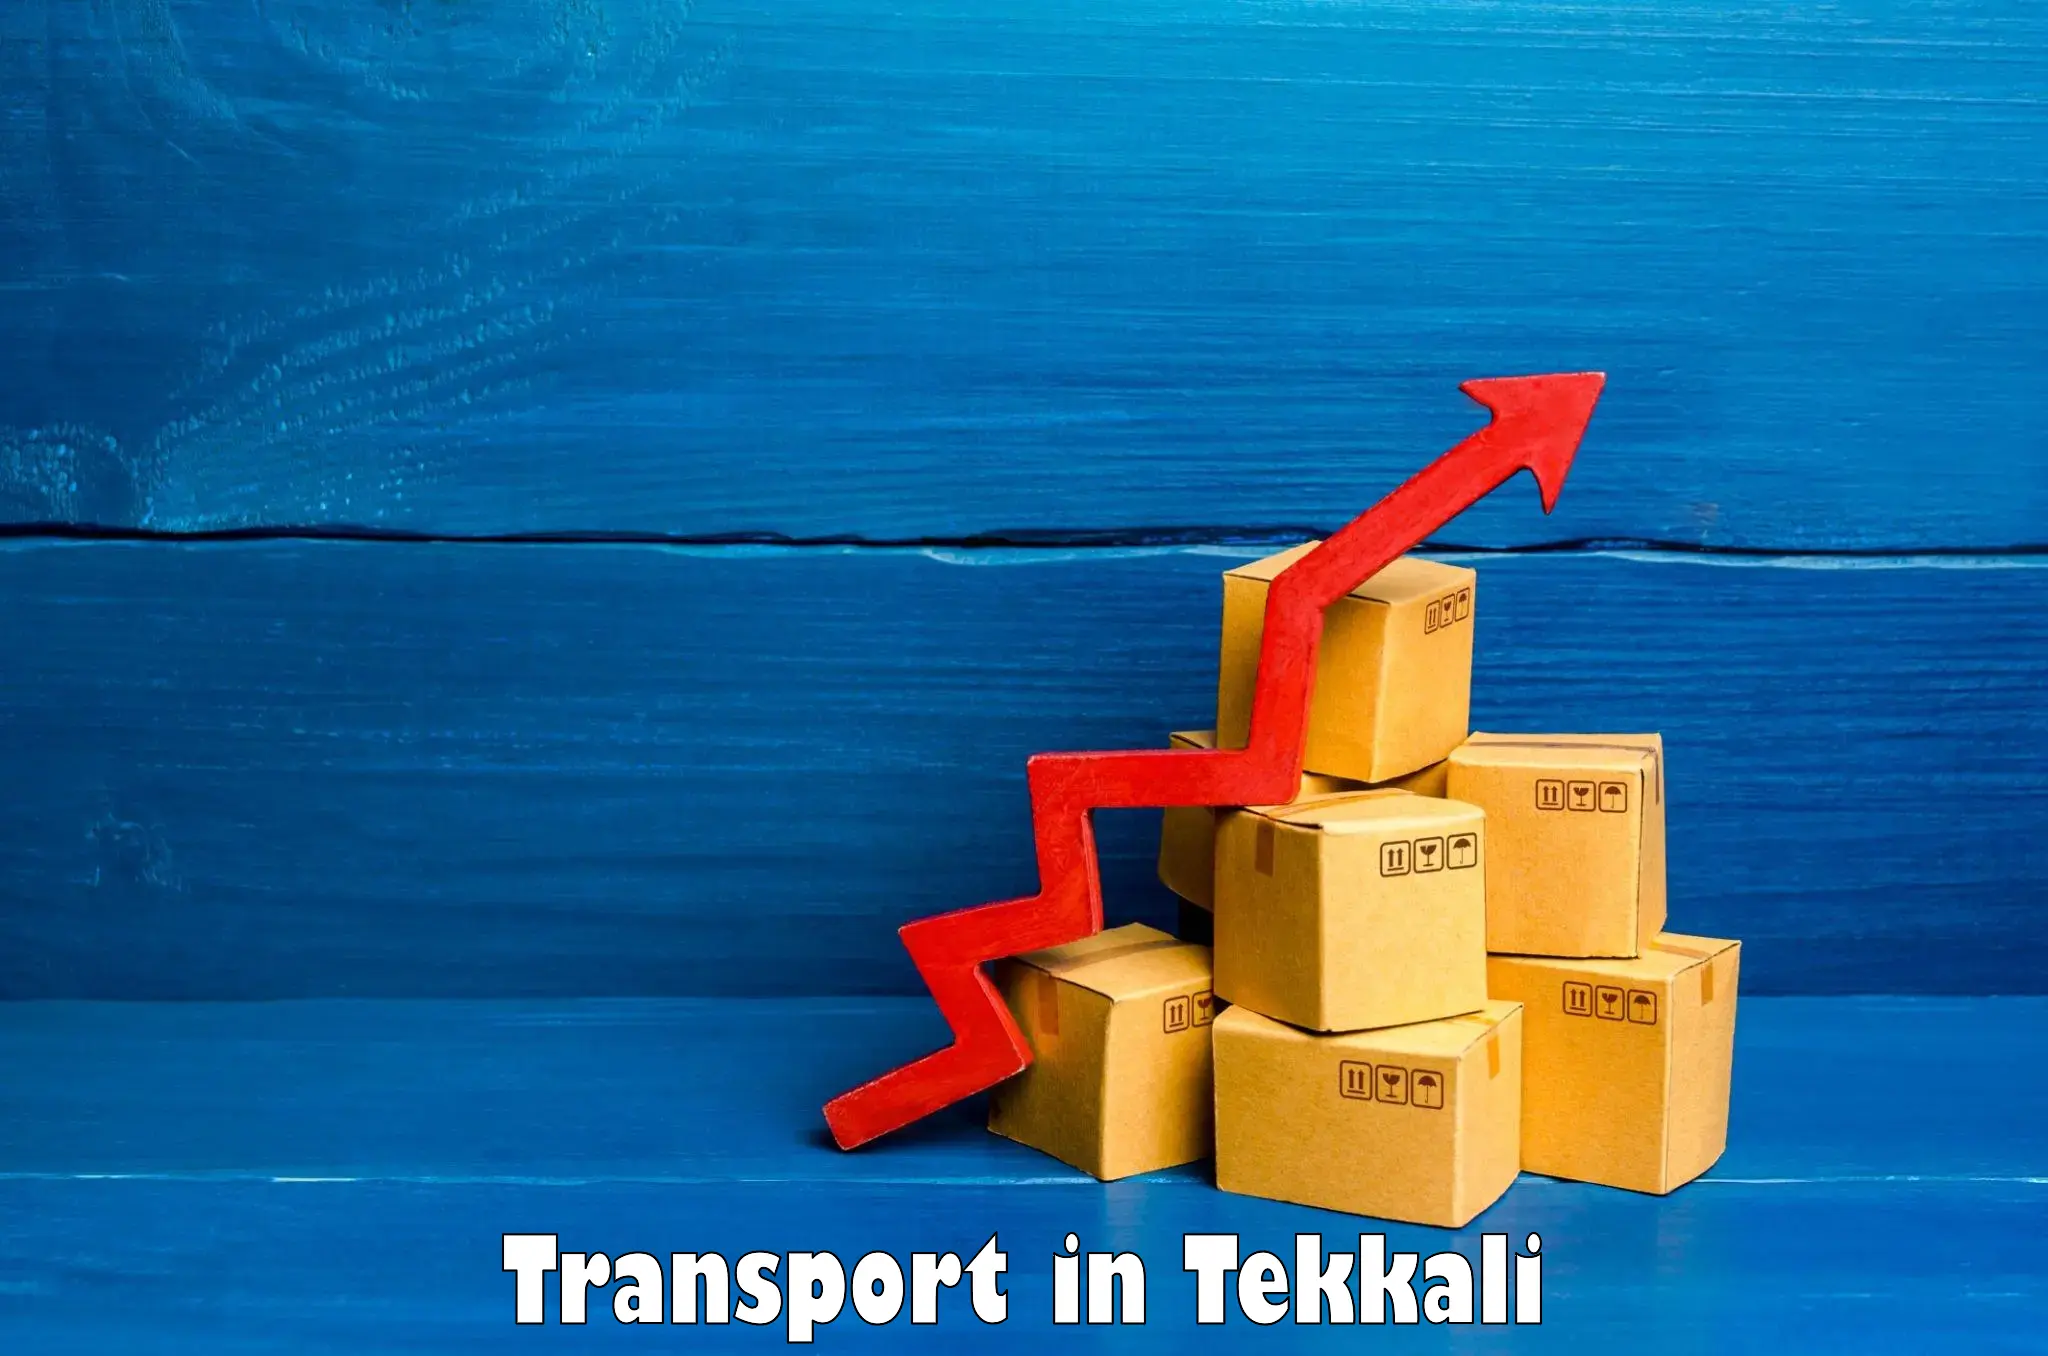 Daily parcel service transport in Tekkali